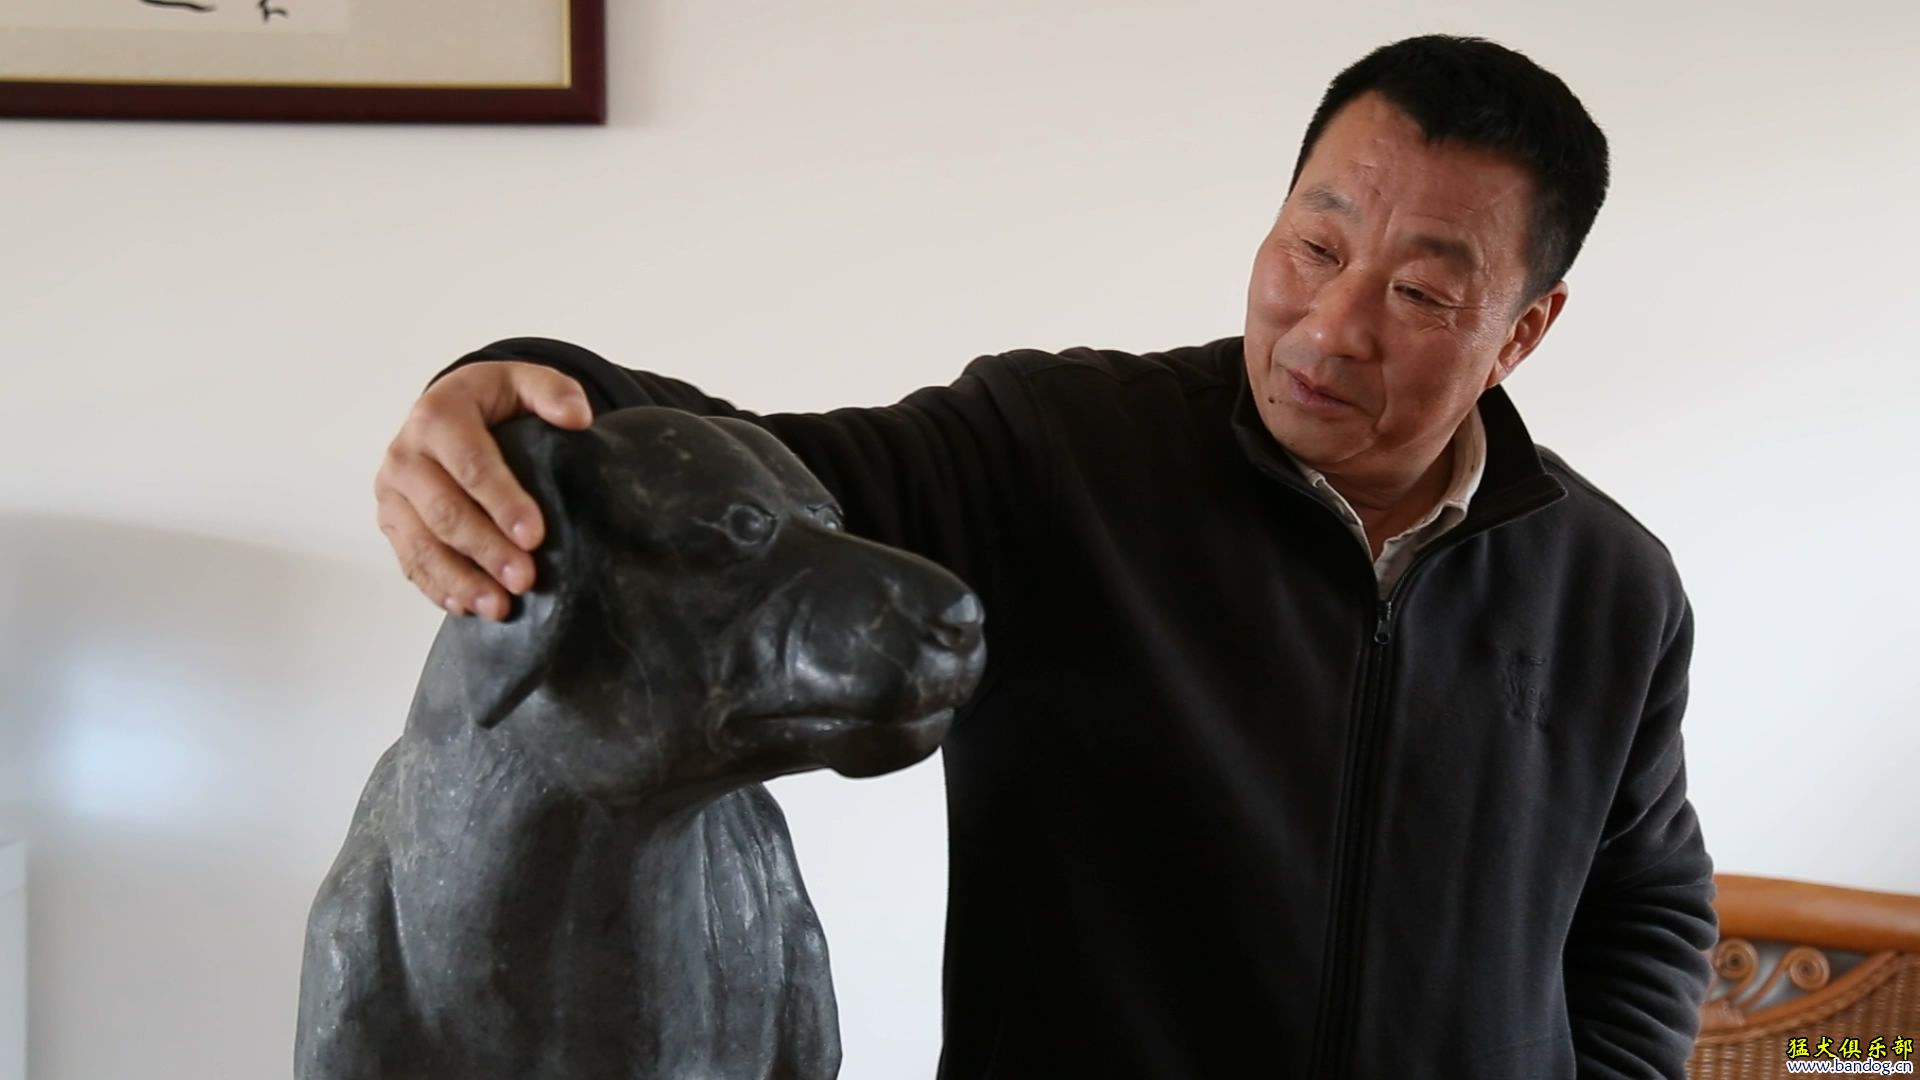 《比特犬在中国》之三 比特犬 繁殖与实战一体的传奇大师- 鲁山王伯彤